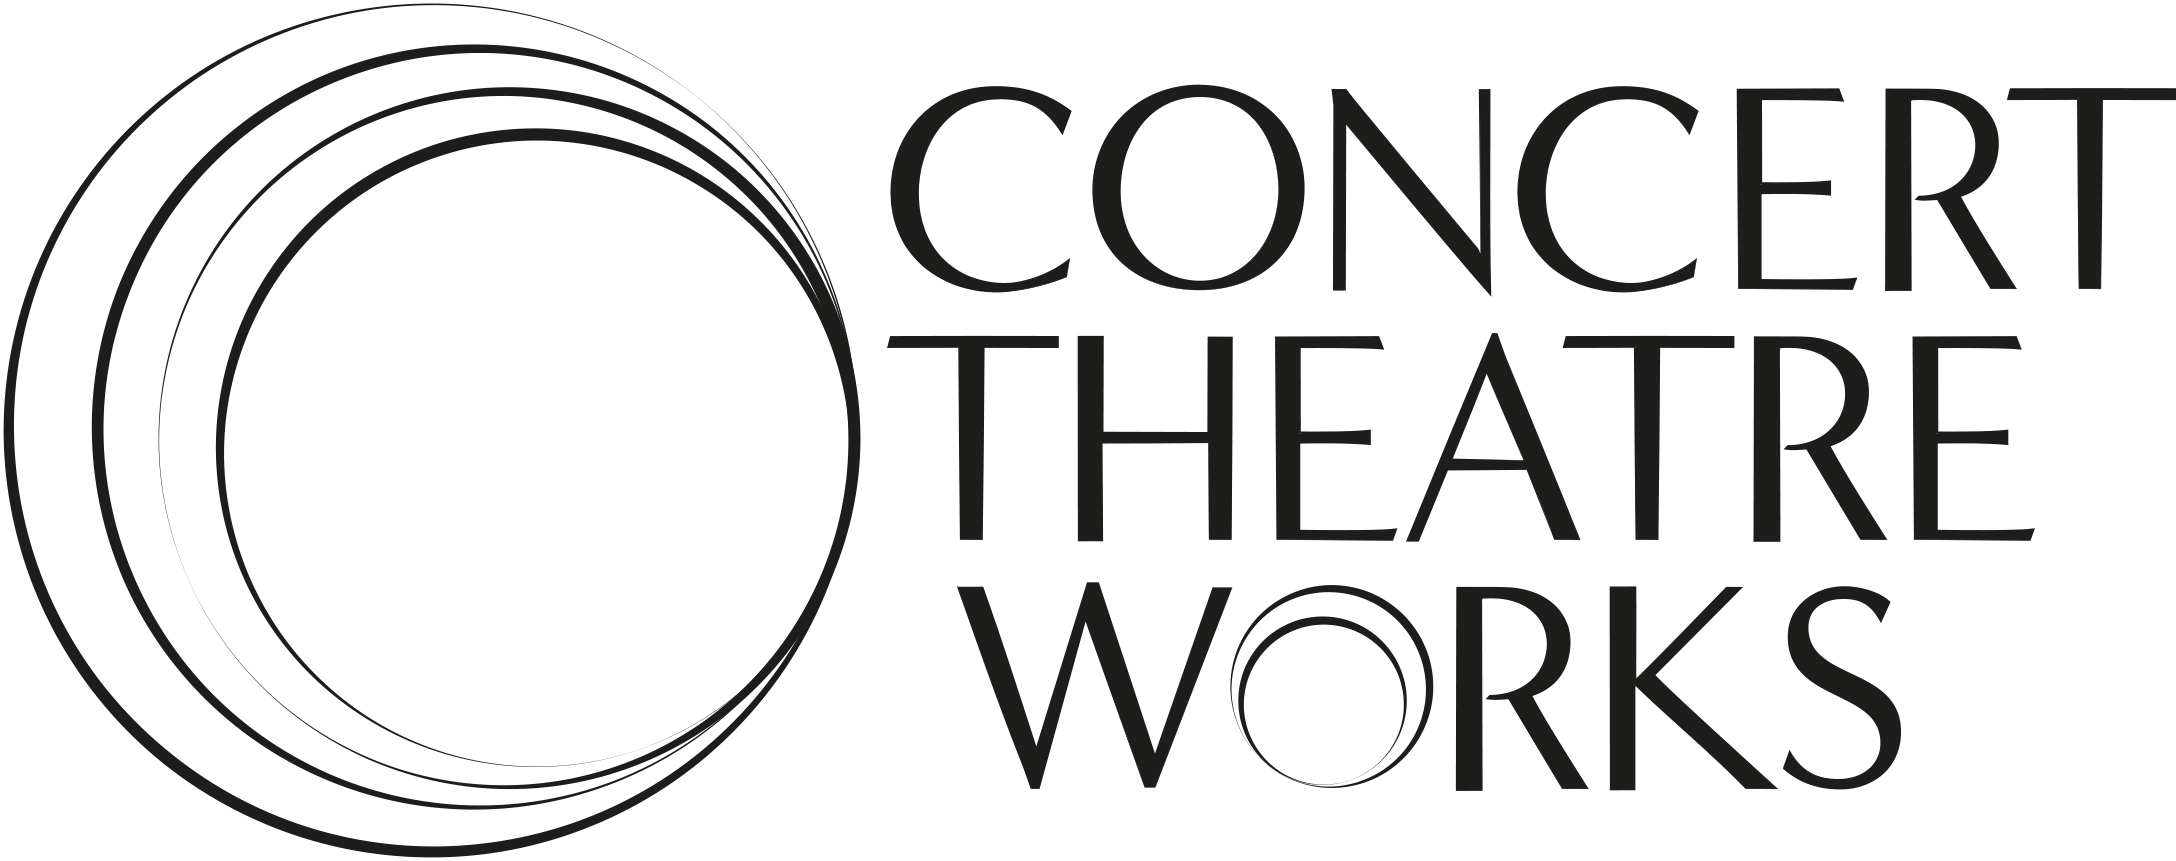 Concert Theatre Works